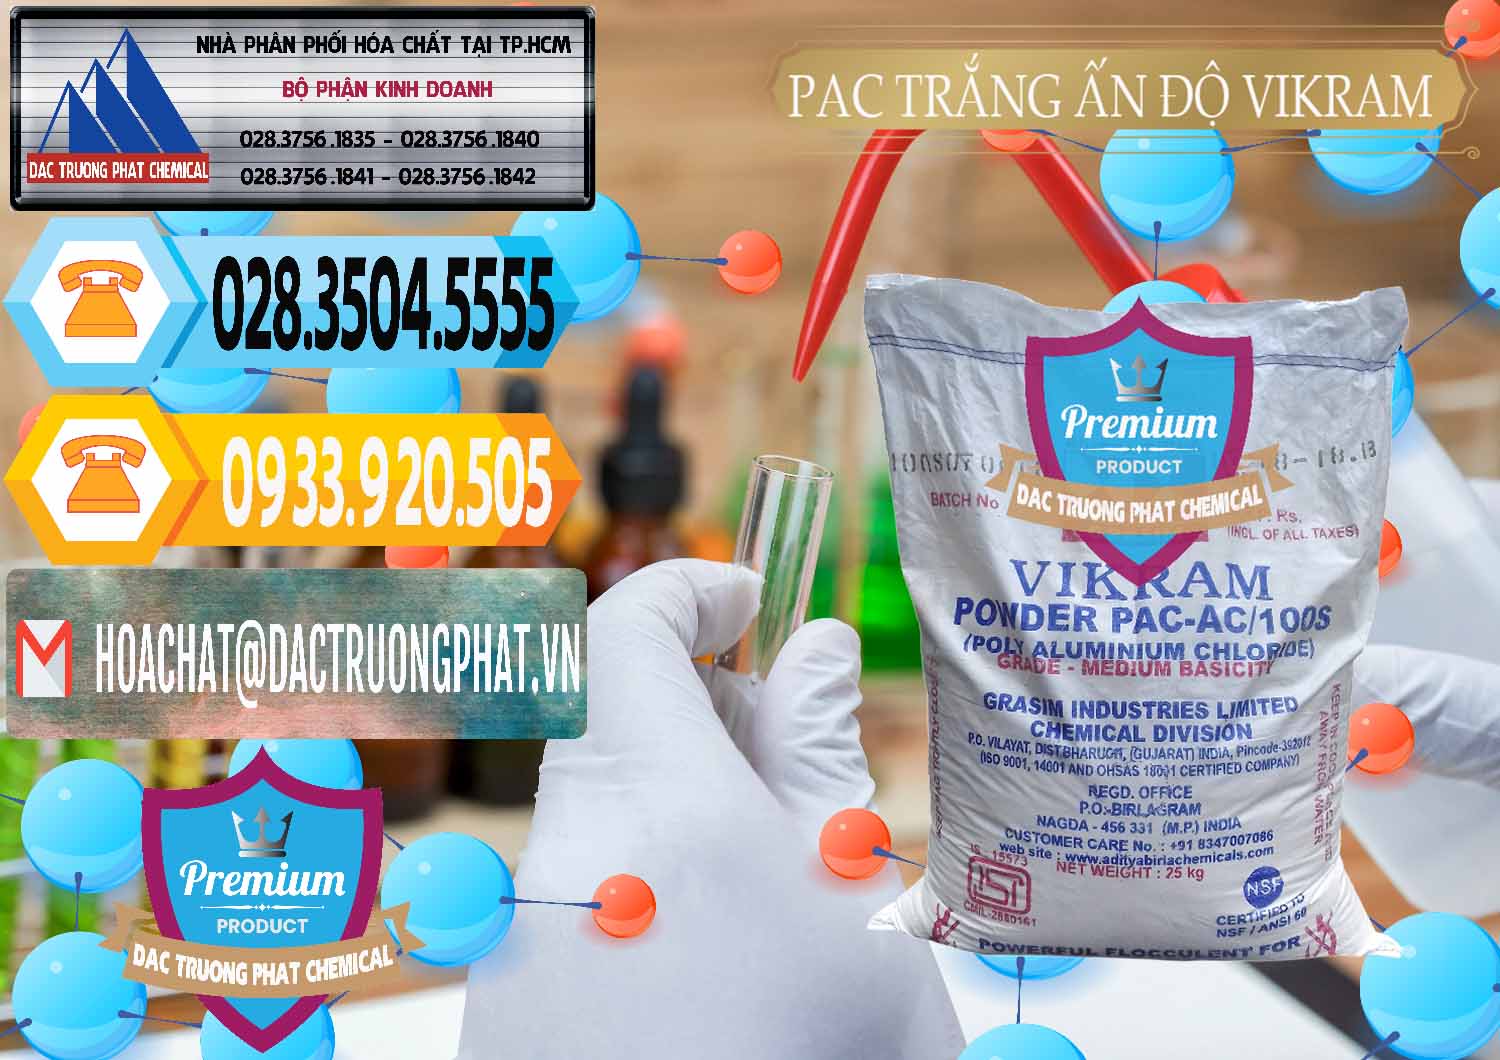 Nơi kinh doanh _ bán PAC - Polyaluminium Chloride Ấn Độ India Vikram - 0120 - Chuyên cung cấp ( nhập khẩu ) hóa chất tại TP.HCM - hoachattayrua.net